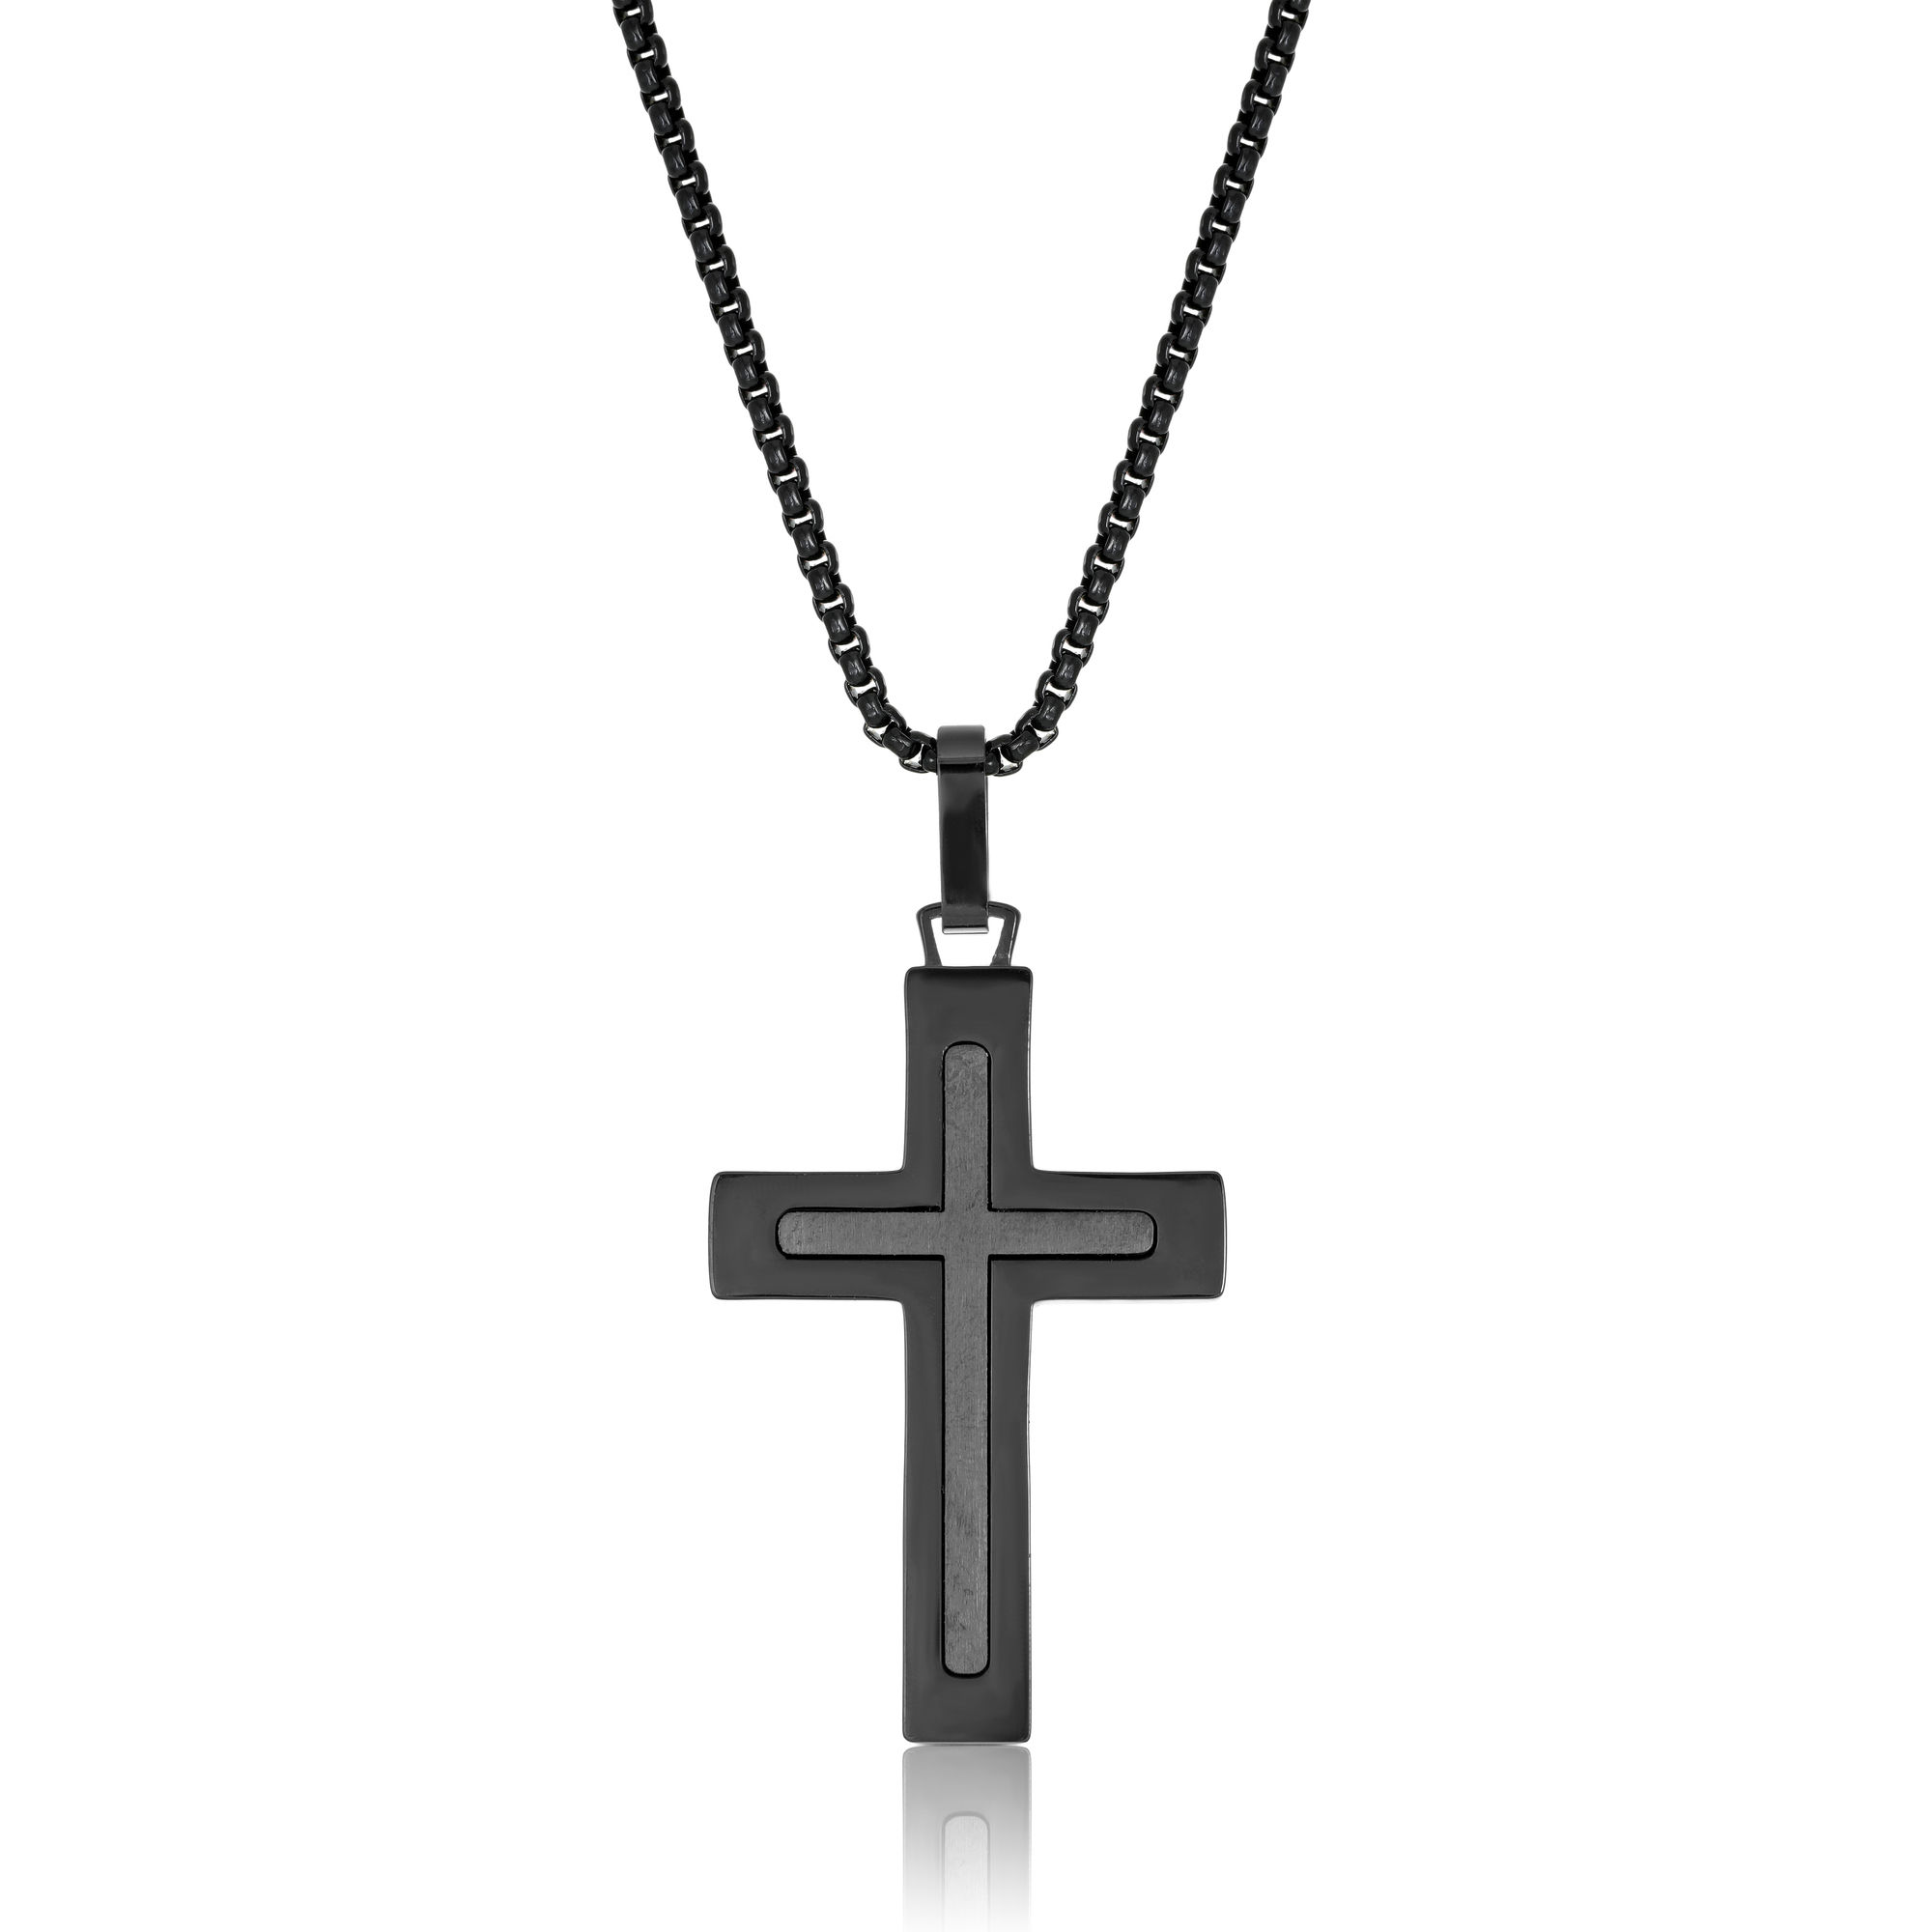 48498-cross-pendant-religious-stainless-steel-.jpg